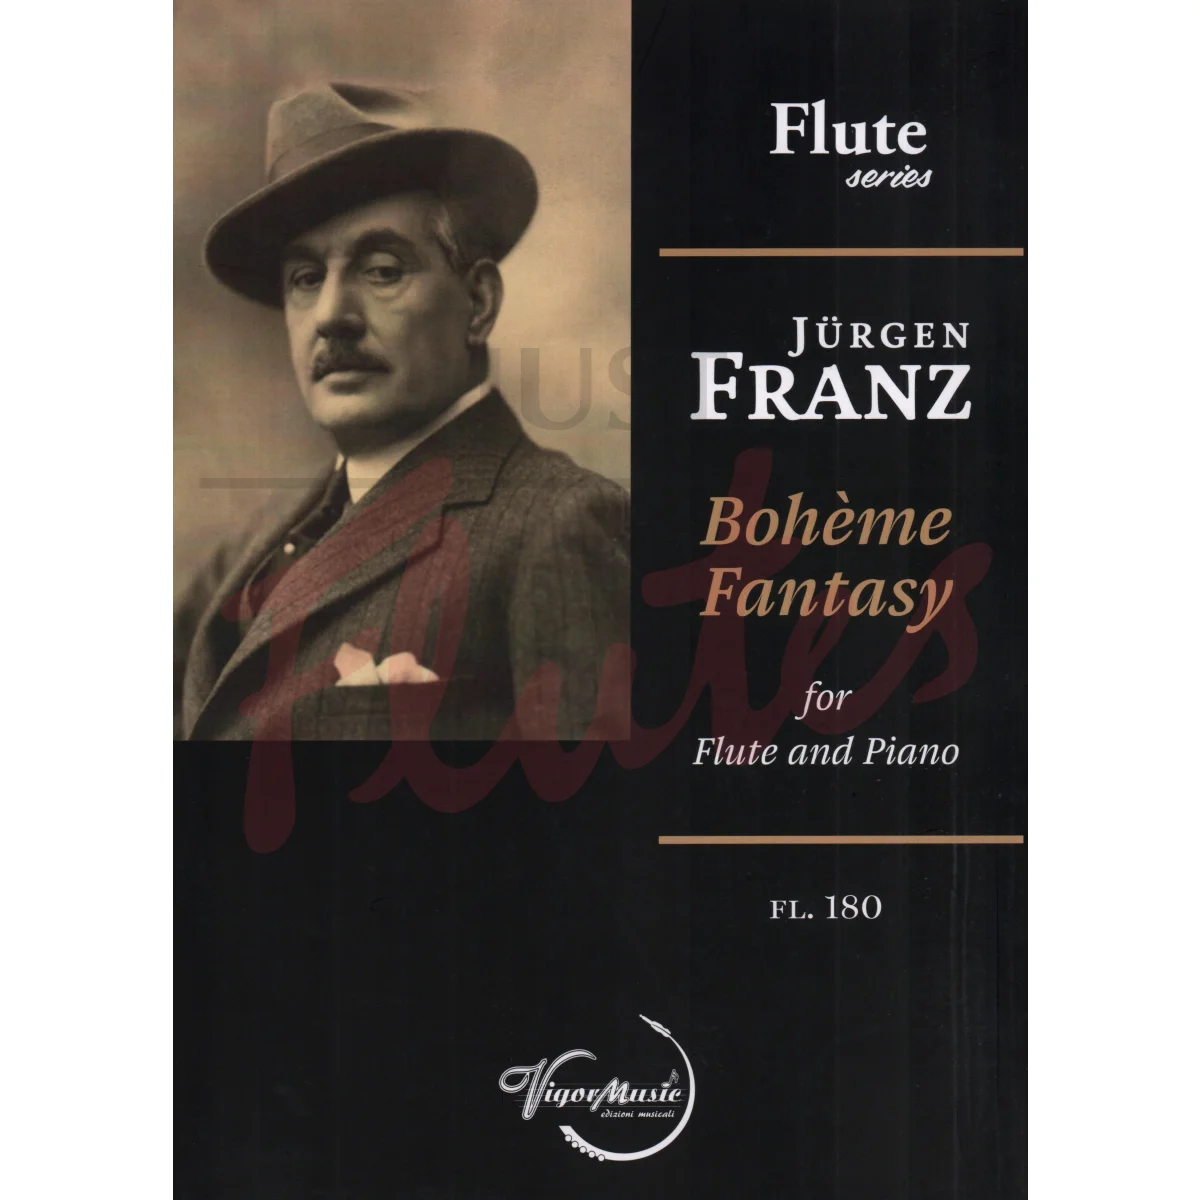 Bohème Fantasy for Flute and Piano